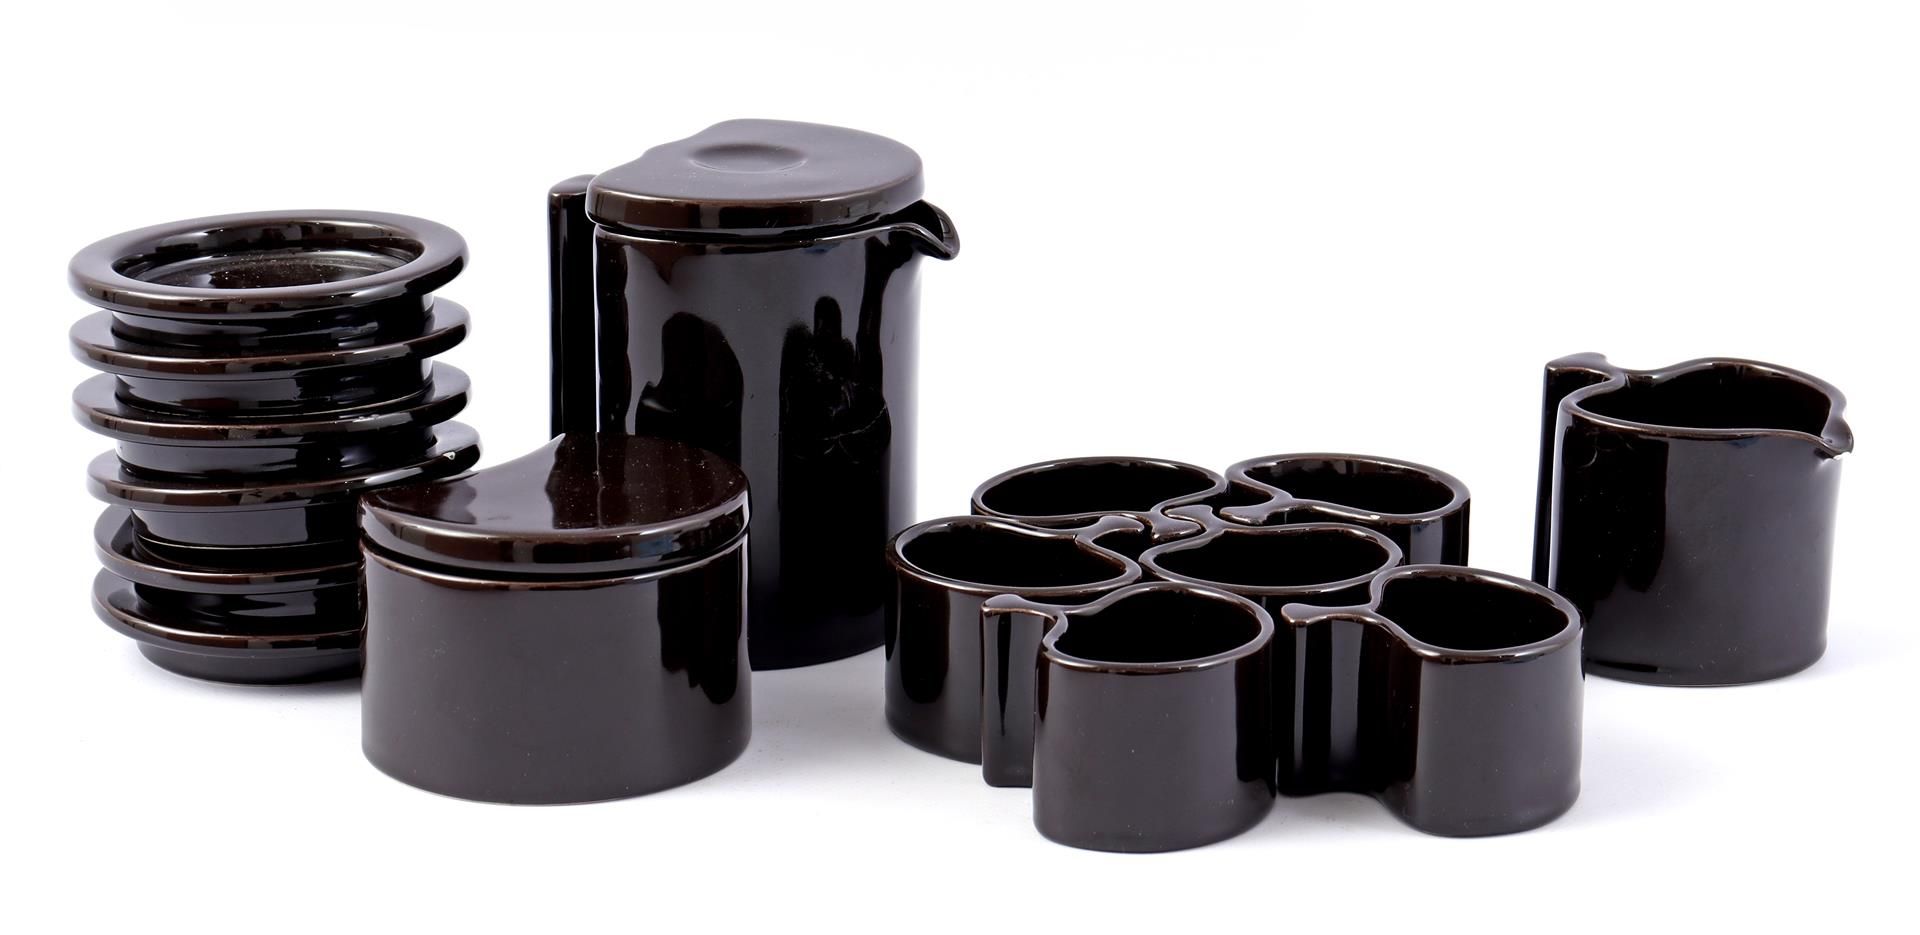 Black glazed earthenware service